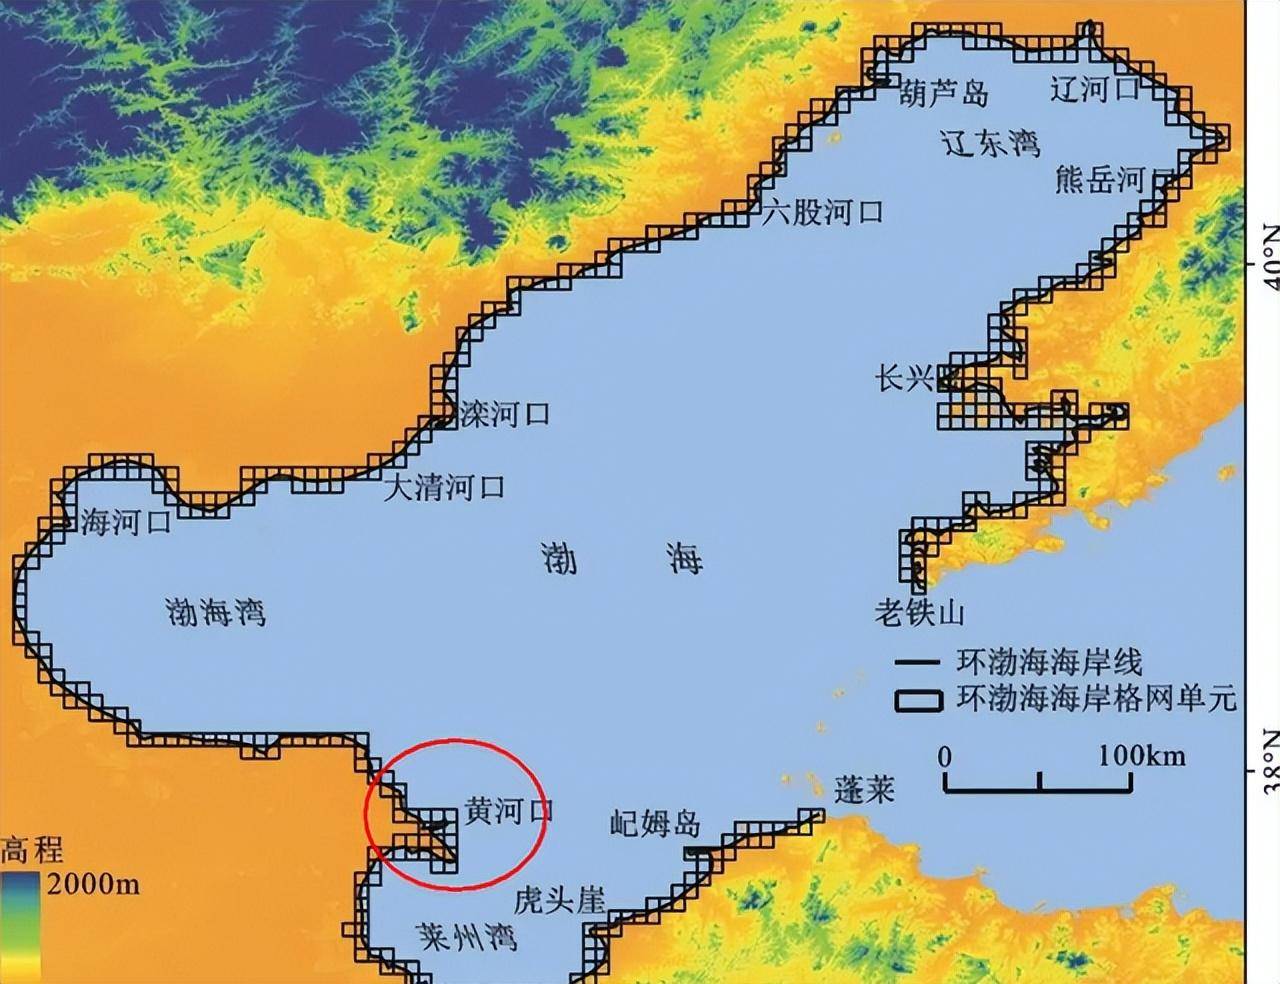 太平洋与大西洋不同于渤海与黄海是内海与外海的区